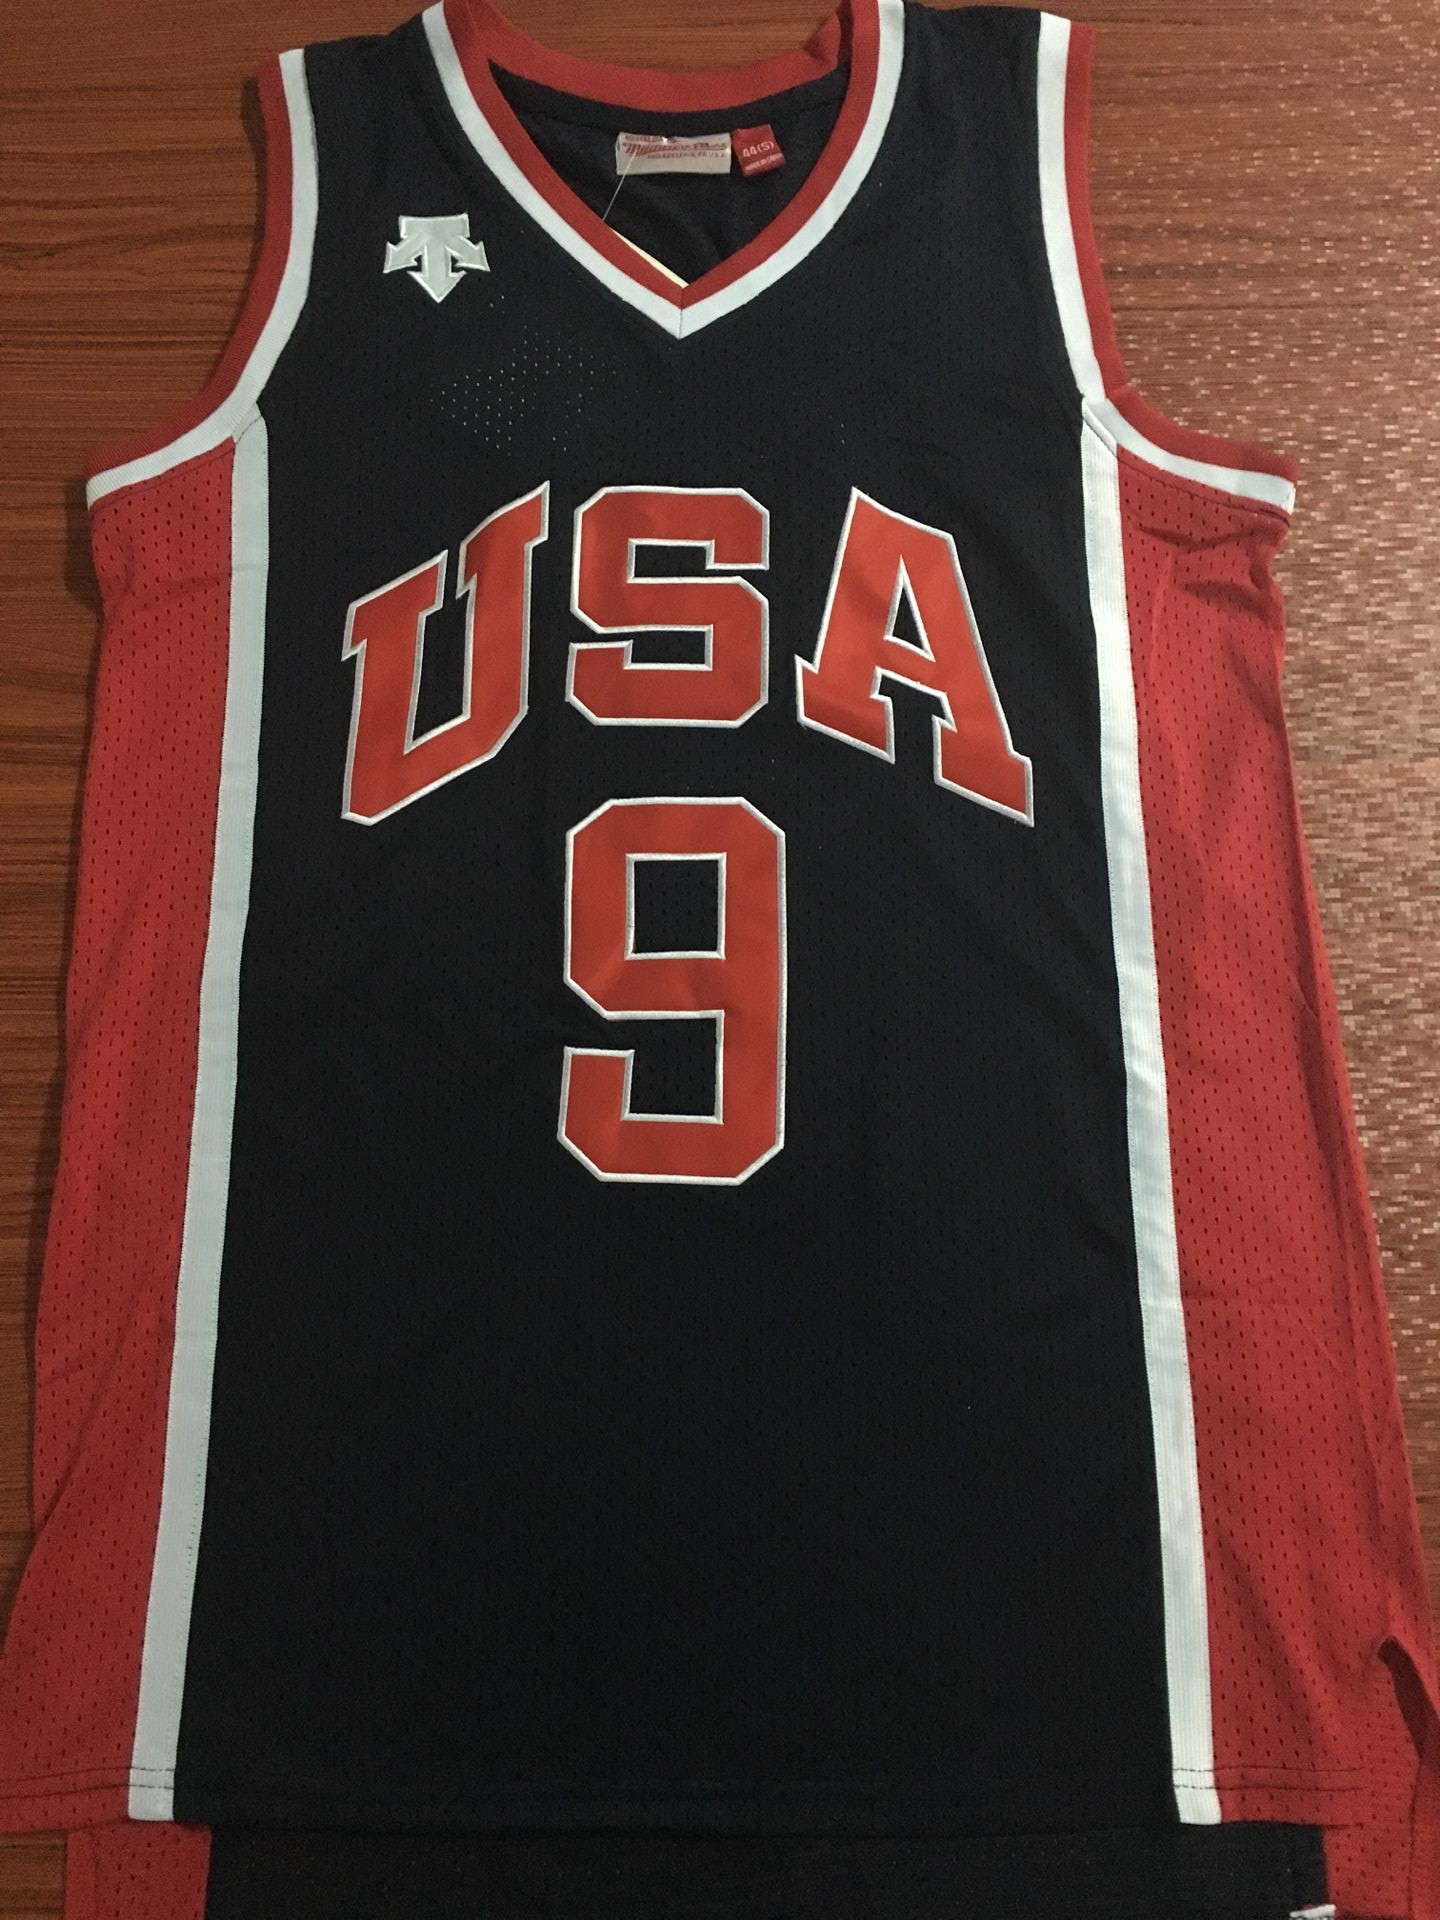 2019/20 Adult Jordan 84 Olympics 9 baskeball shirt customize name number